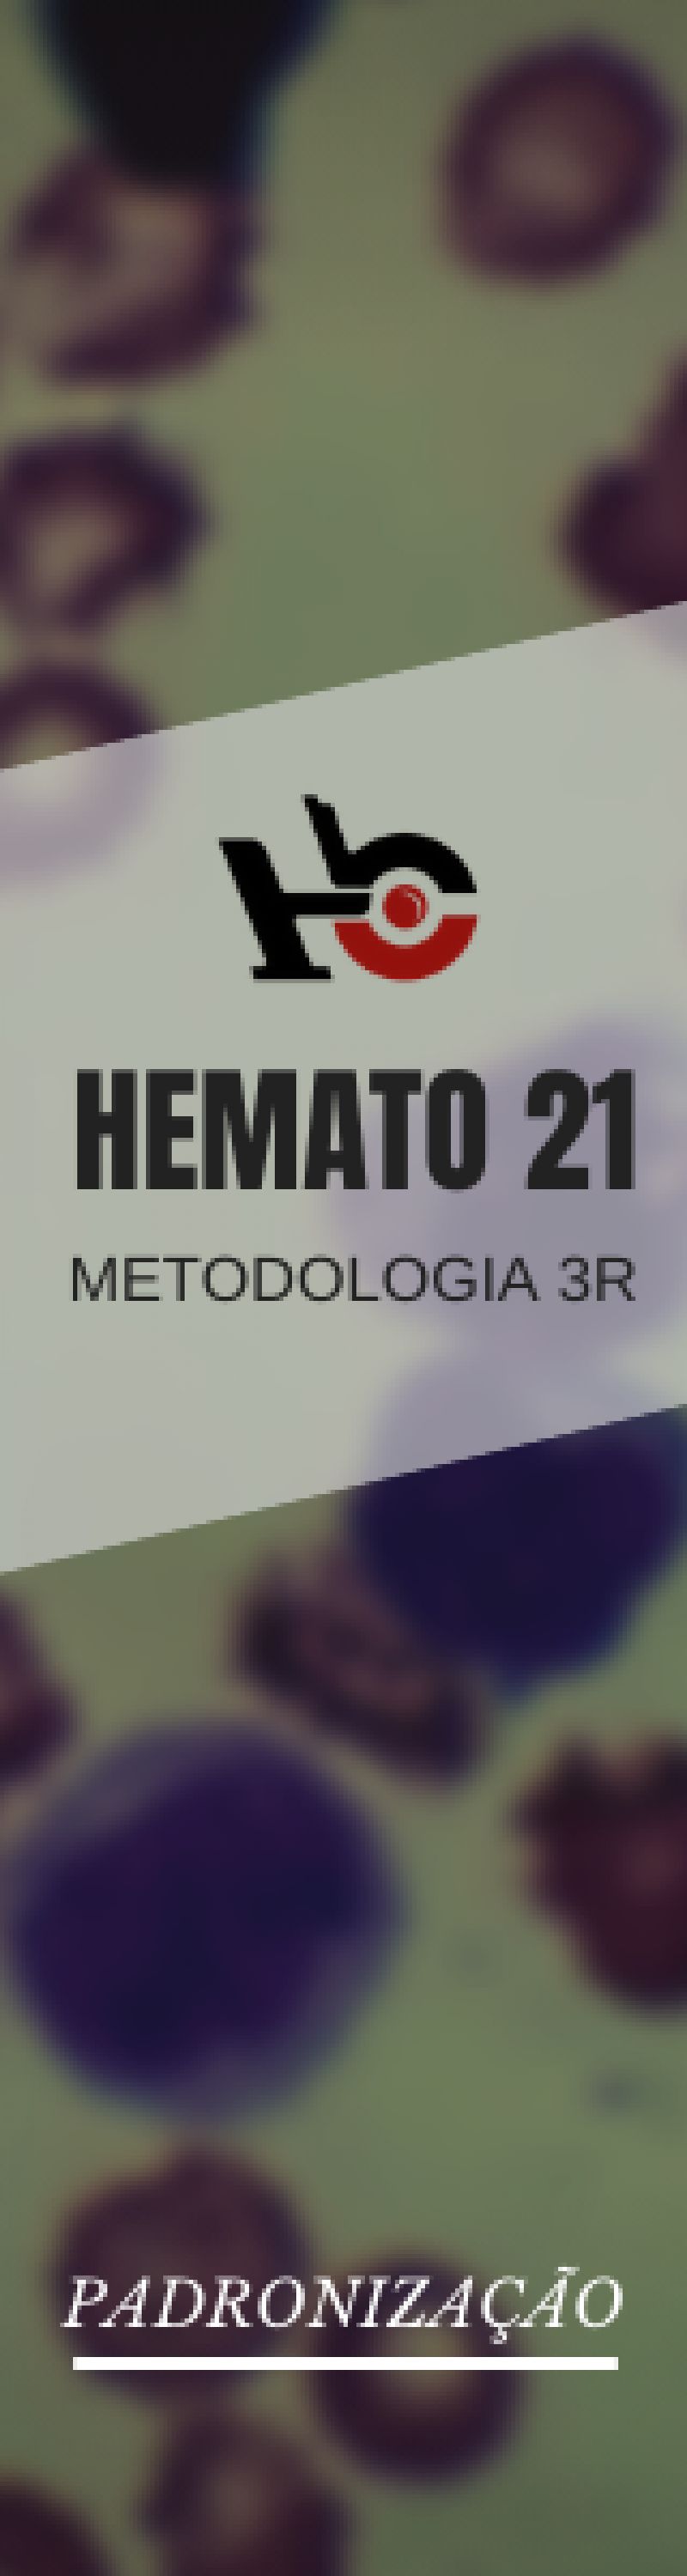 hemato 21